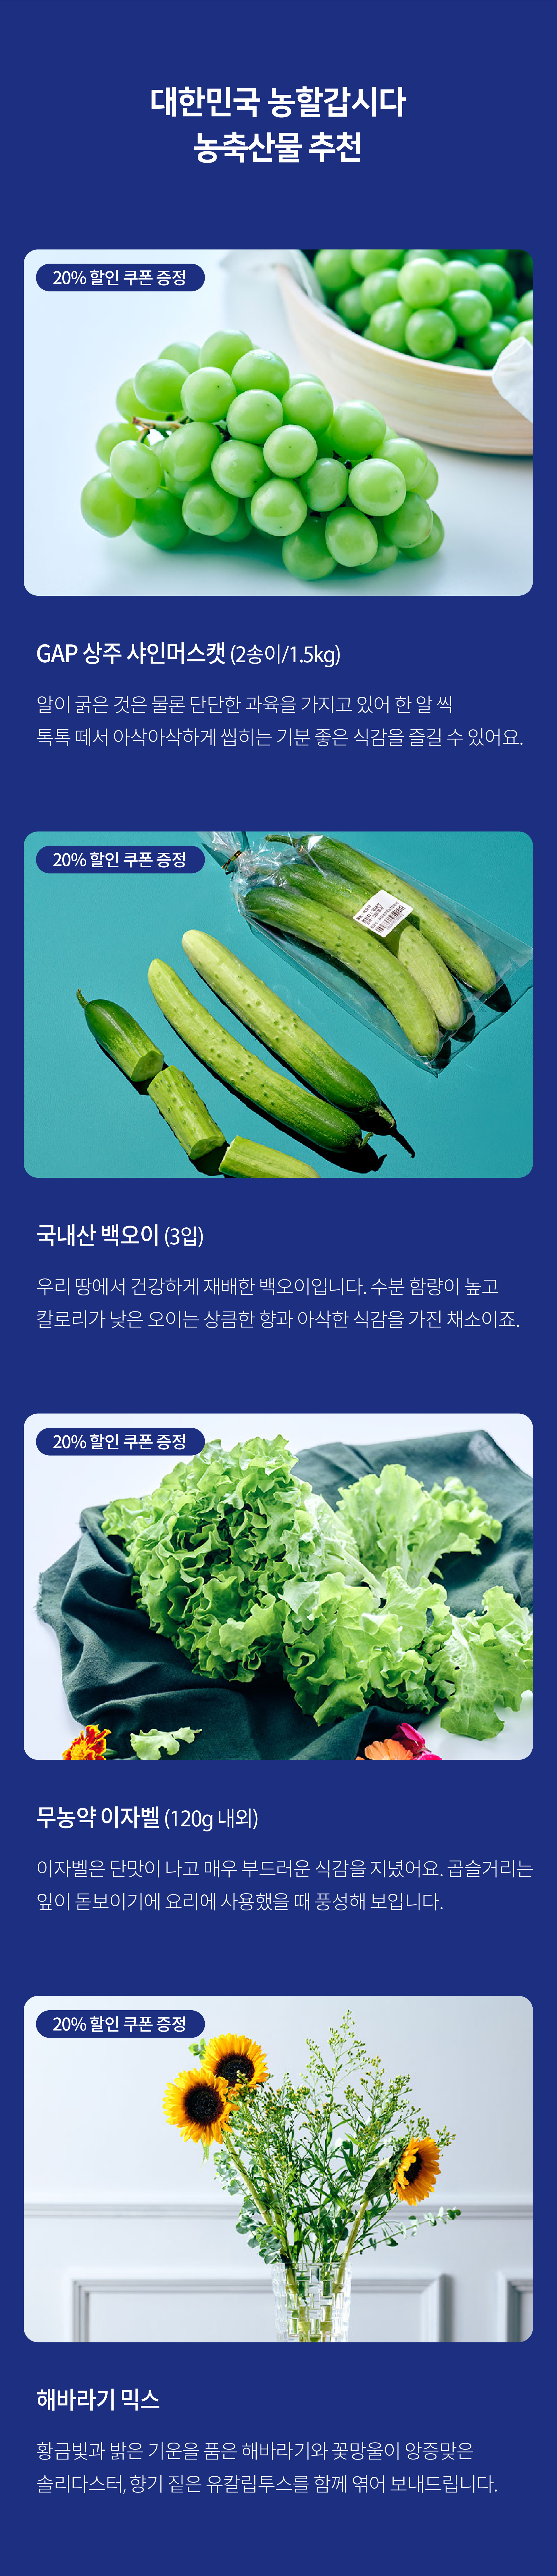 대한민국 농할갑시다 농축산물 추천